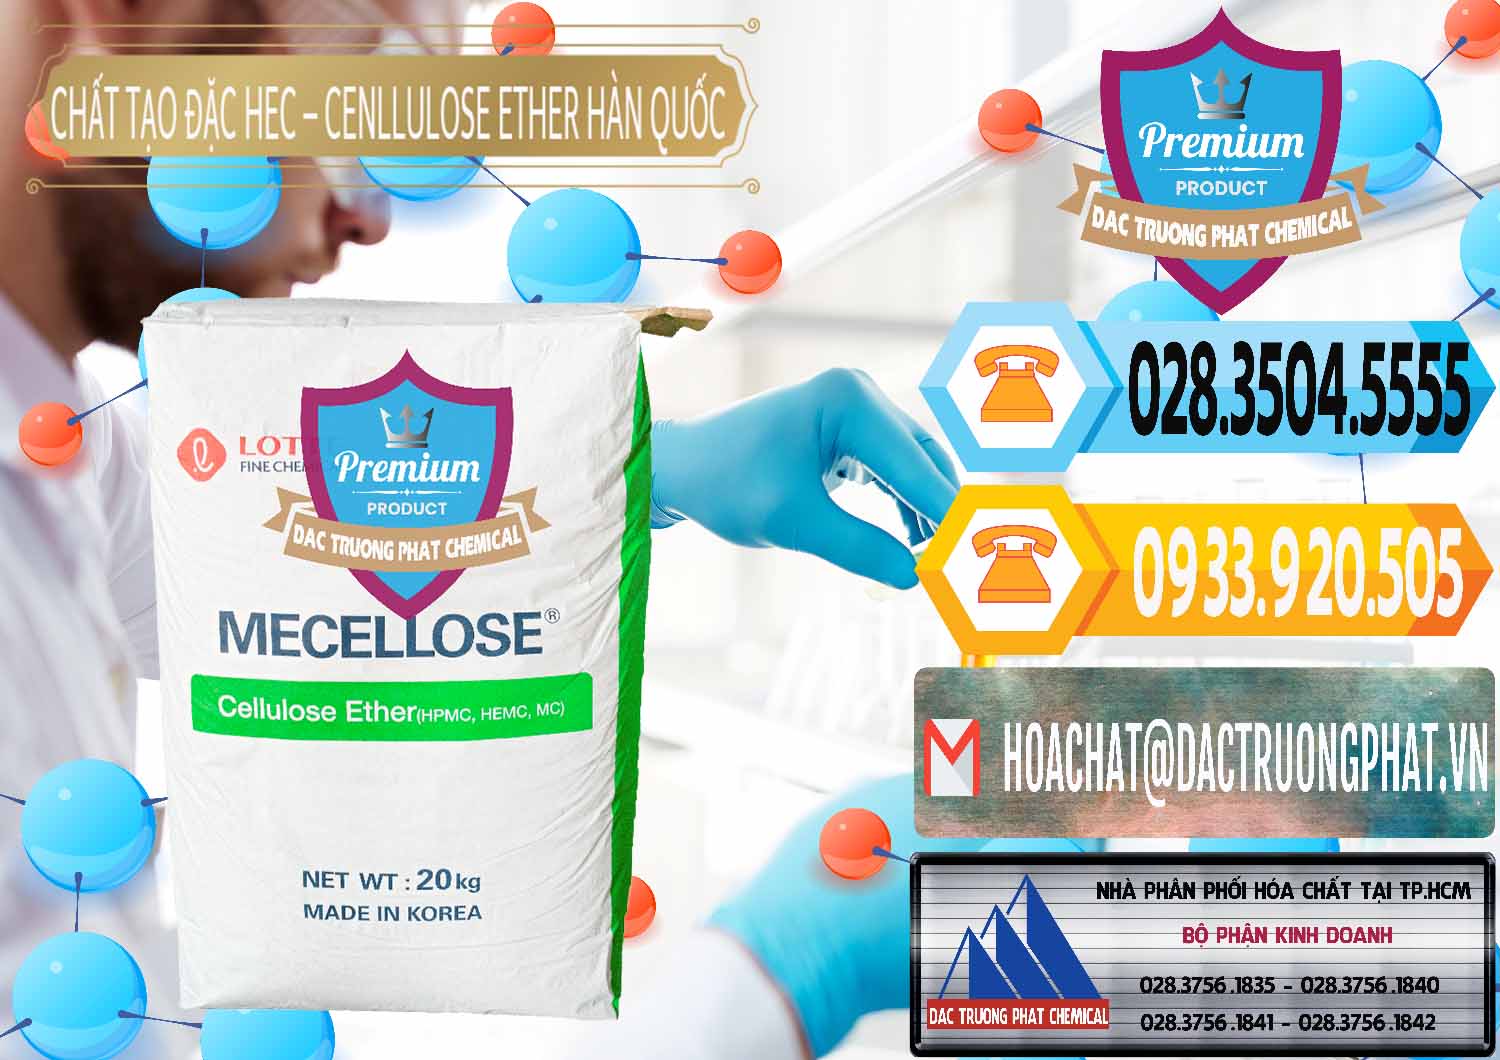 Cty chuyên nhập khẩu - bán Chất Tạo Đặc Hec Mecellose – Cenllulose Ether Lotte Hàn Quốc Korea - 0050 - Nơi chuyên nhập khẩu ( cung cấp ) hóa chất tại TP.HCM - hoachattayrua.net